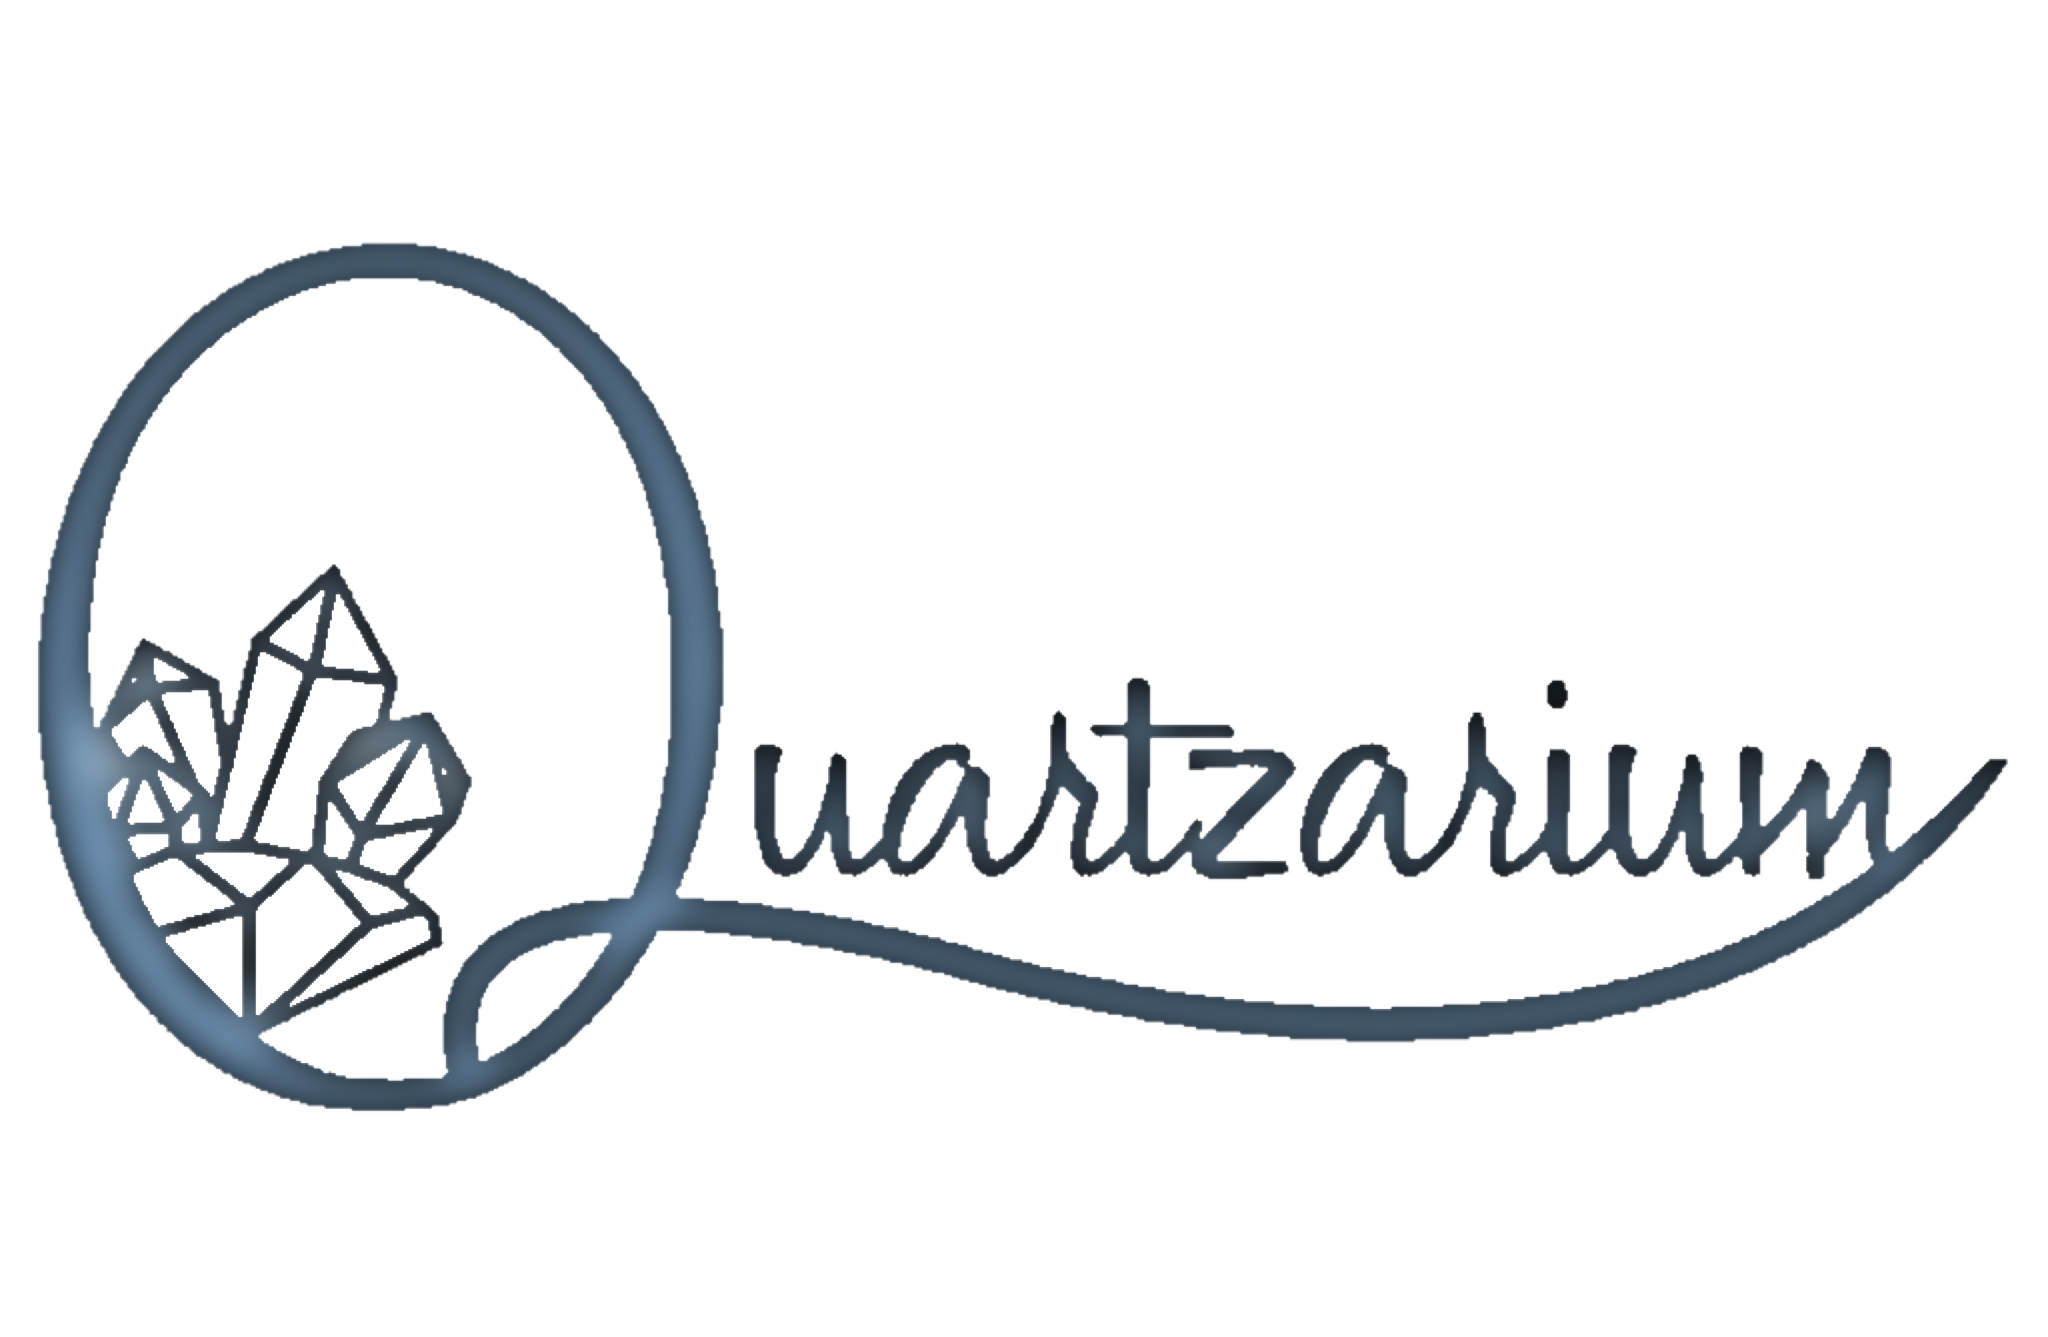 Quartzarium,LLC.